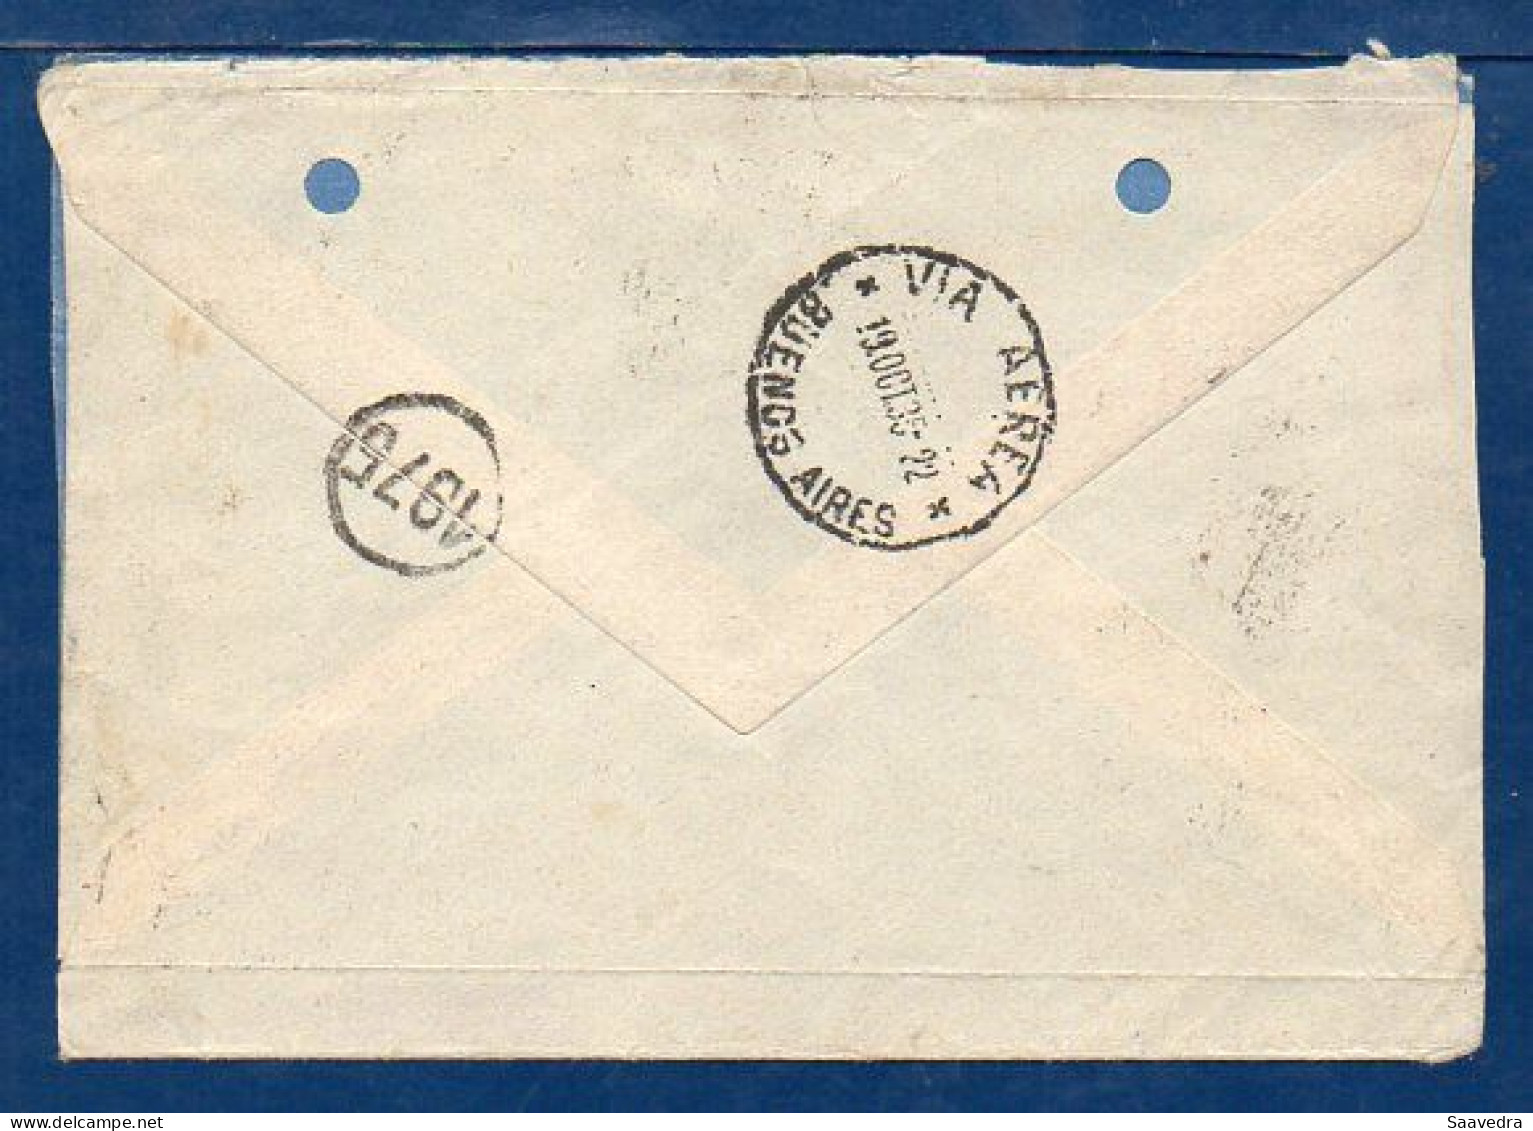 France To Argentina, 1935, Via Air France  (006) - Briefe U. Dokumente